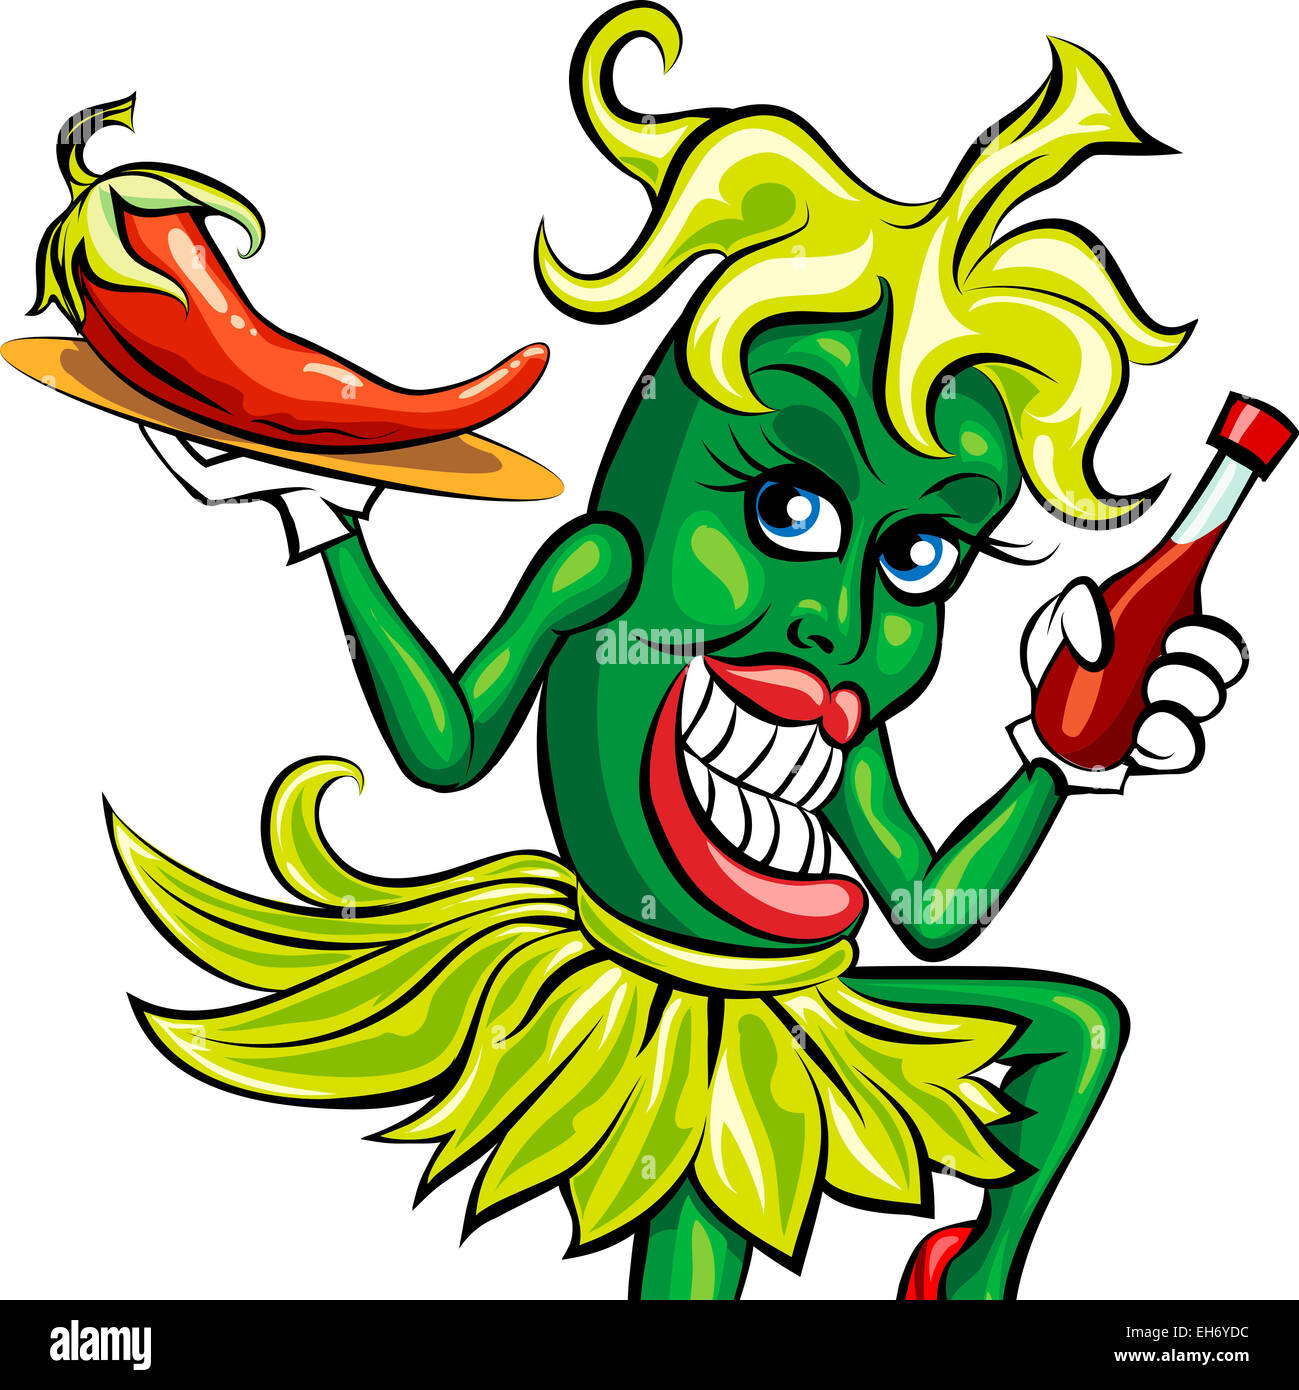 Illustration humoristique de poivron vert en serveuse uniforme avec une bouteille de sauce piquante et disposé sur un plateau de chili Banque D'Images